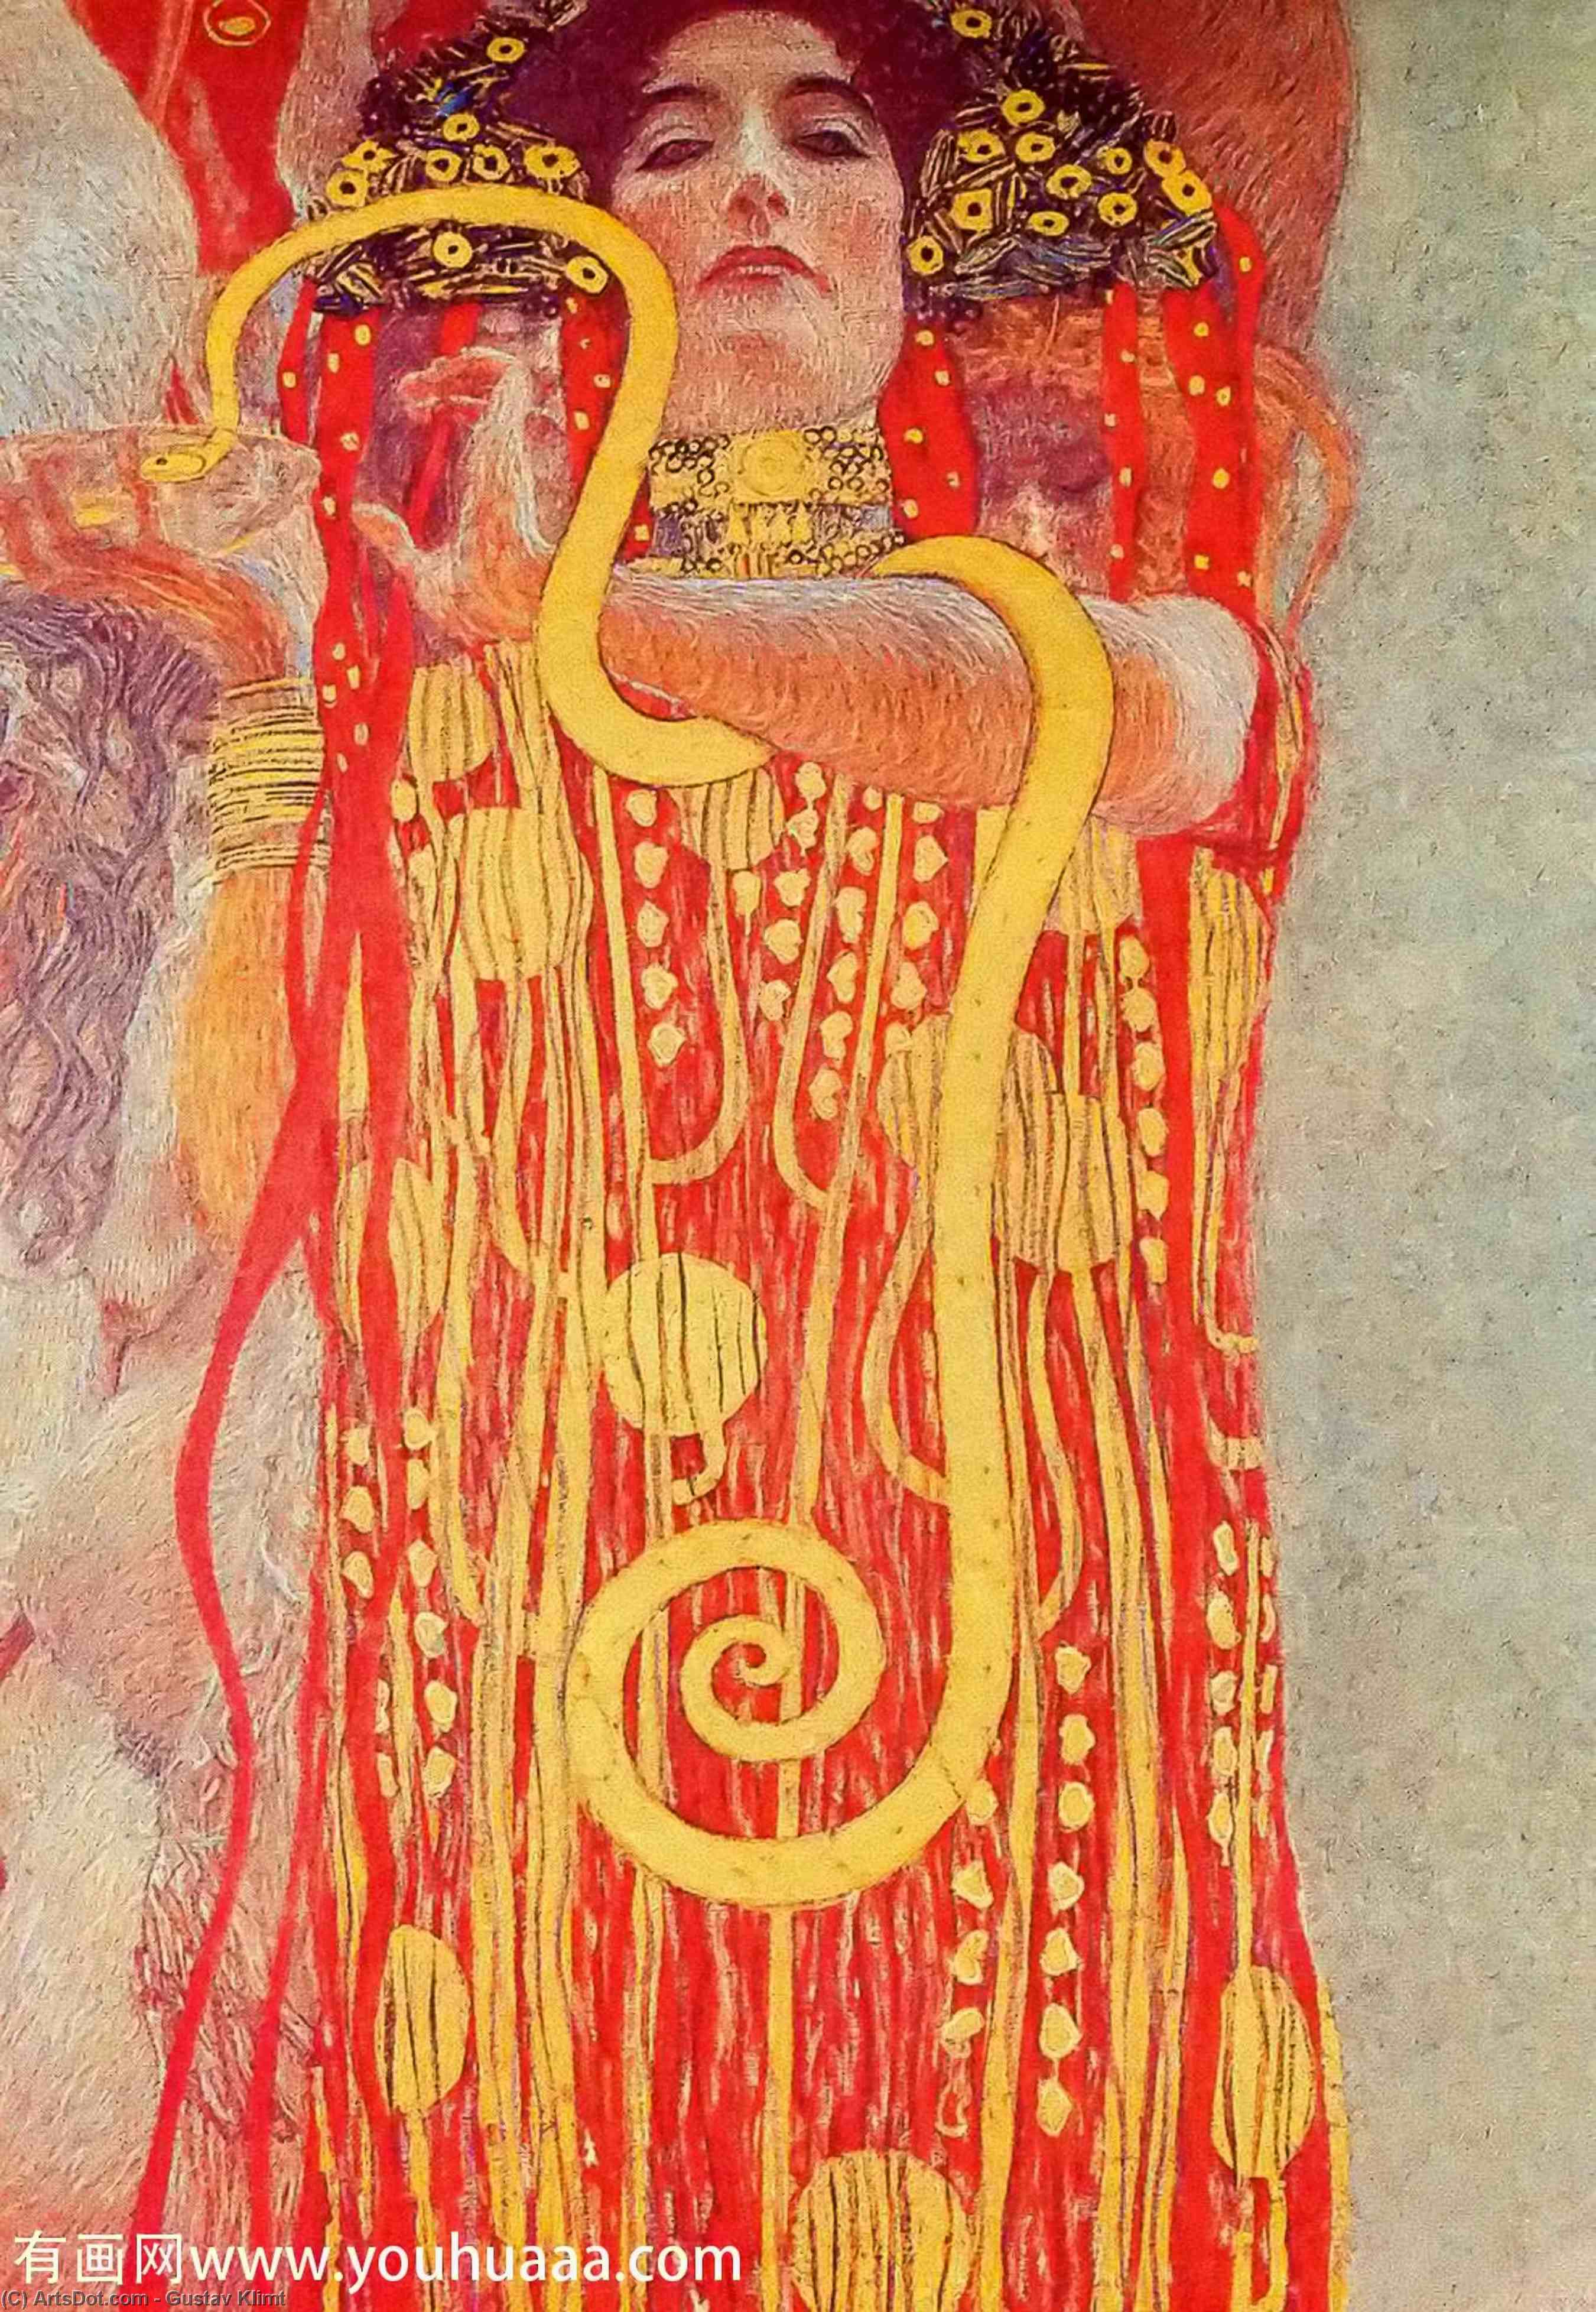 Wikioo.org - Bách khoa toàn thư về mỹ thuật - Vẽ tranh, Tác phẩm nghệ thuật Gustav Klimt - University of Vienna Ceiling Paintings (Medicine), detail showing Hygieia